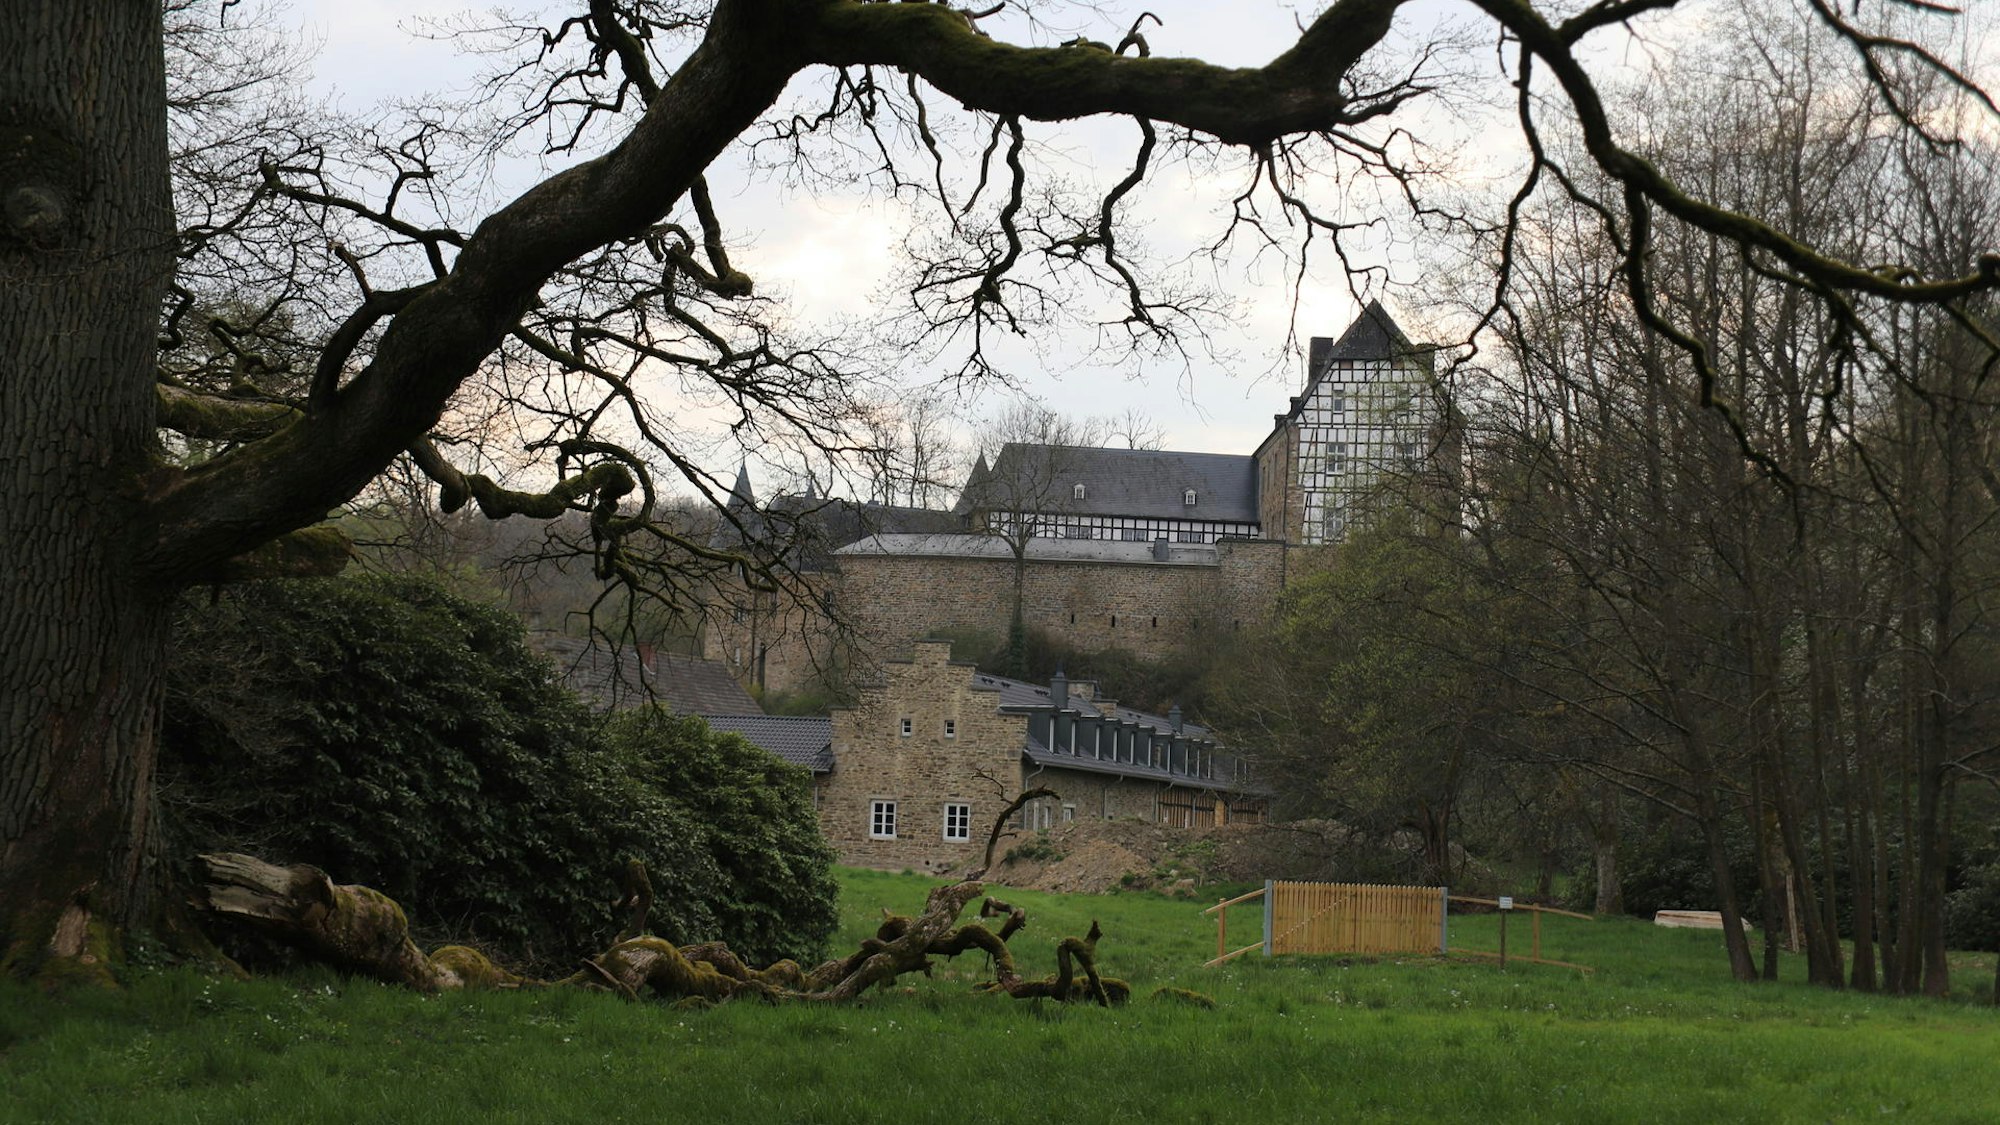 Auf dem Bild ist die Burg Herrnstein zu sehen.